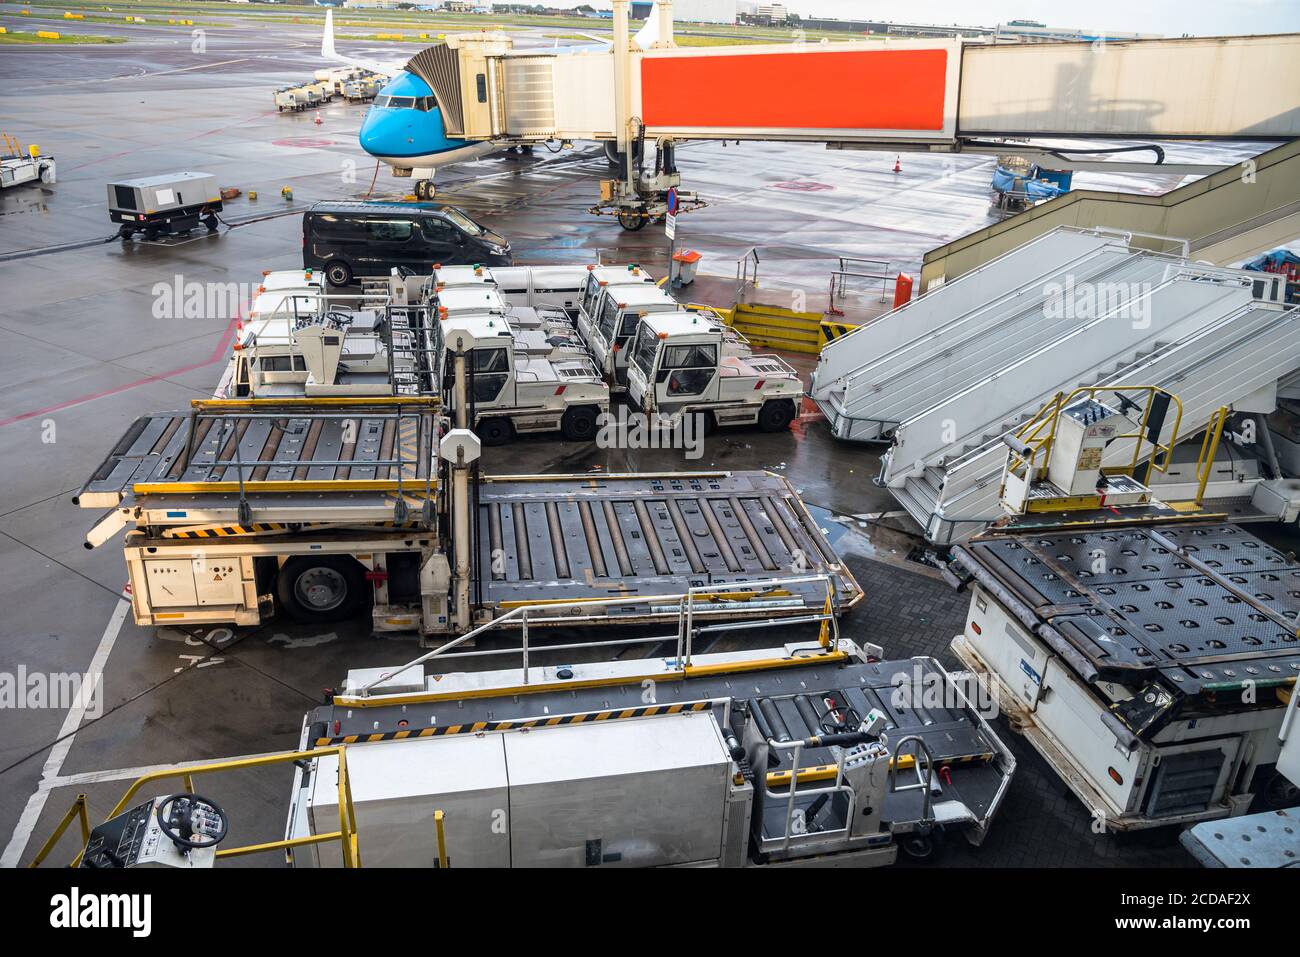 Carrelli per bagagli e altre attrezzature per il carico e lo scarico di aeromobili sulla asfalto di un aeroporto Foto Stock